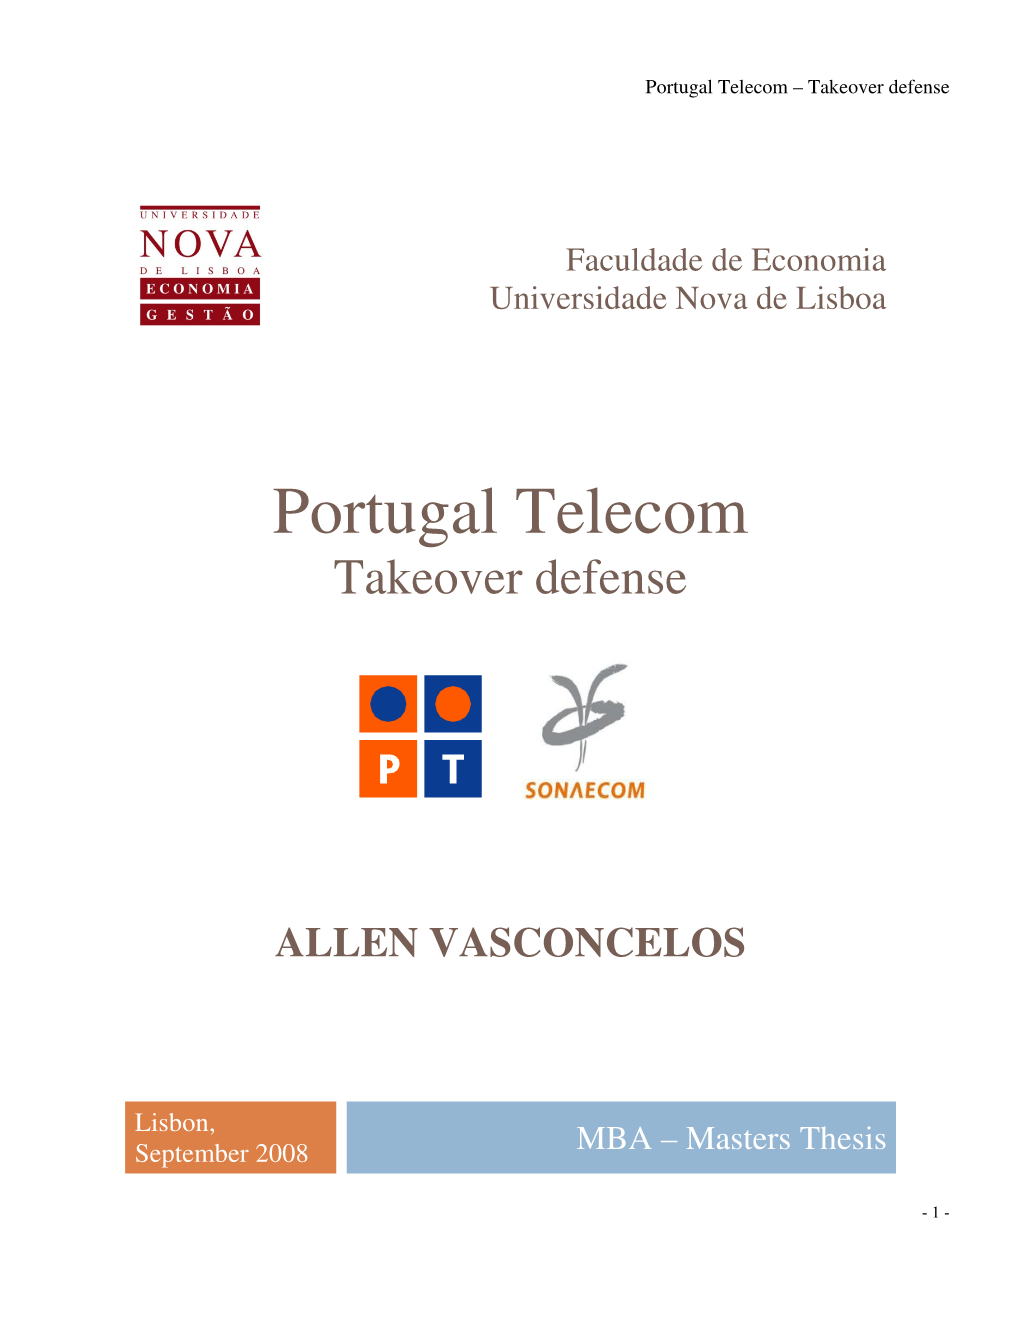 Portugal Telecom – Takeover Defense